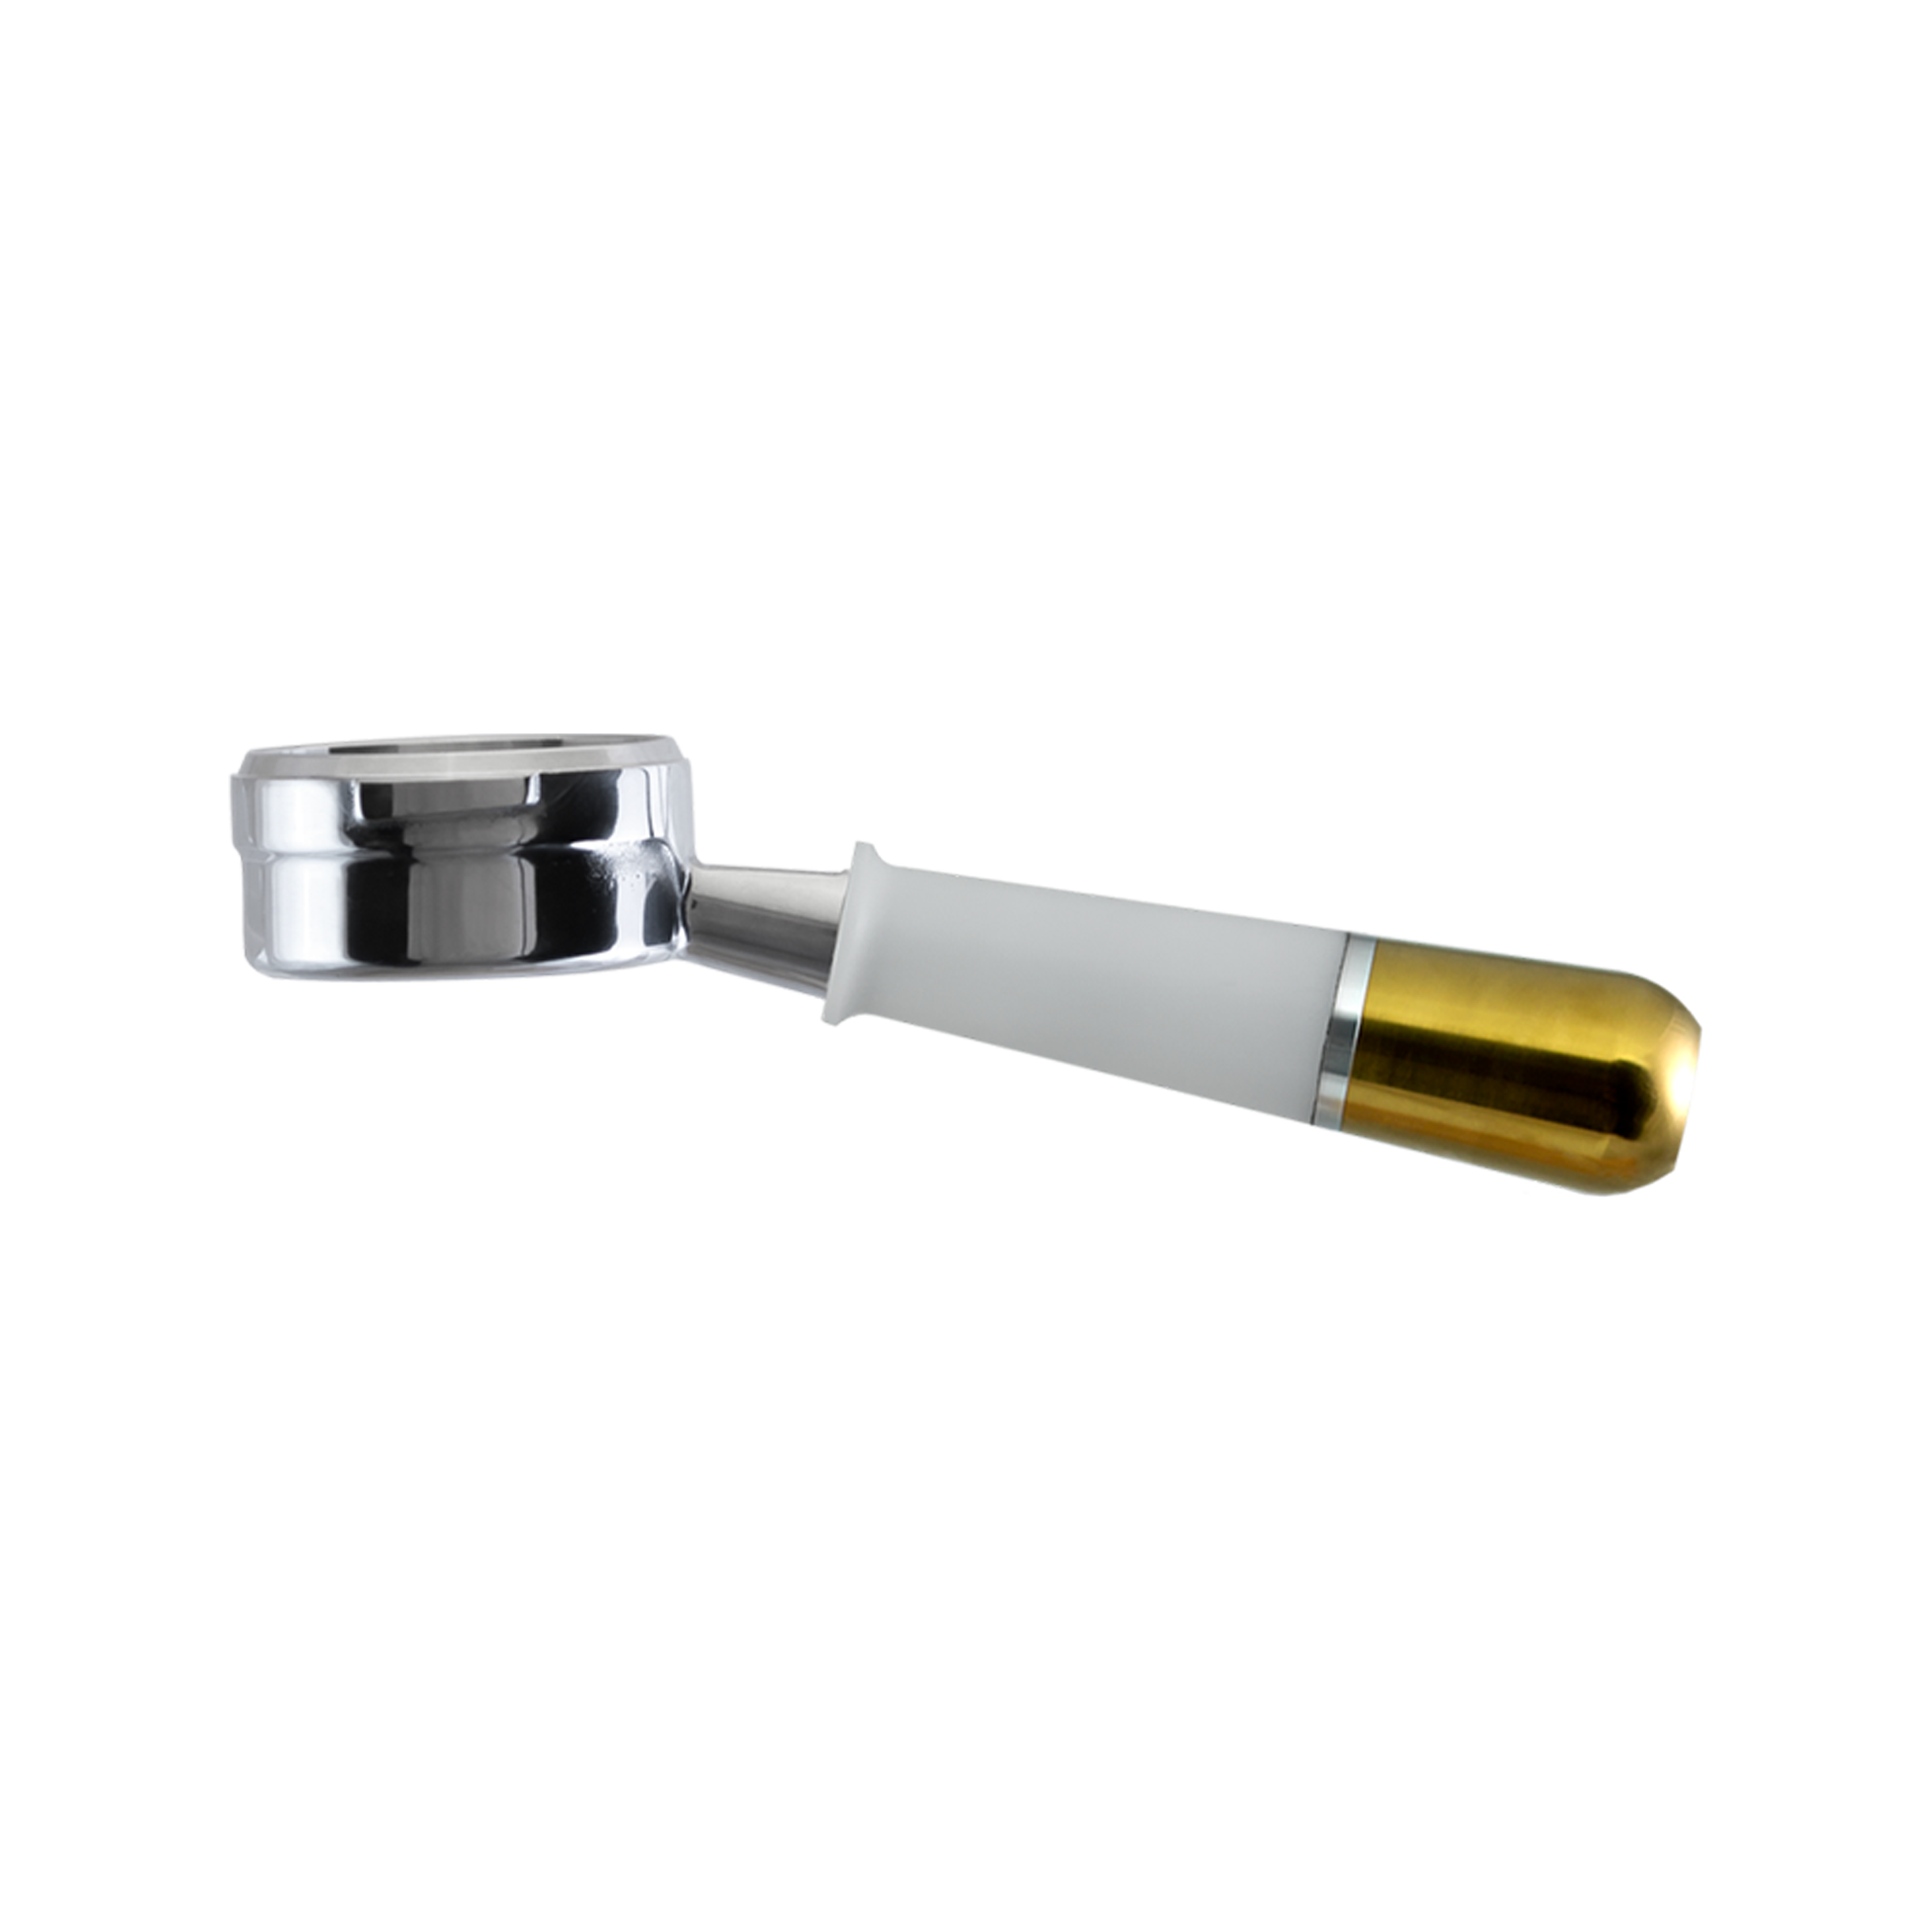 Naked Portafilter 58mm (LM, E61) - White & Gold